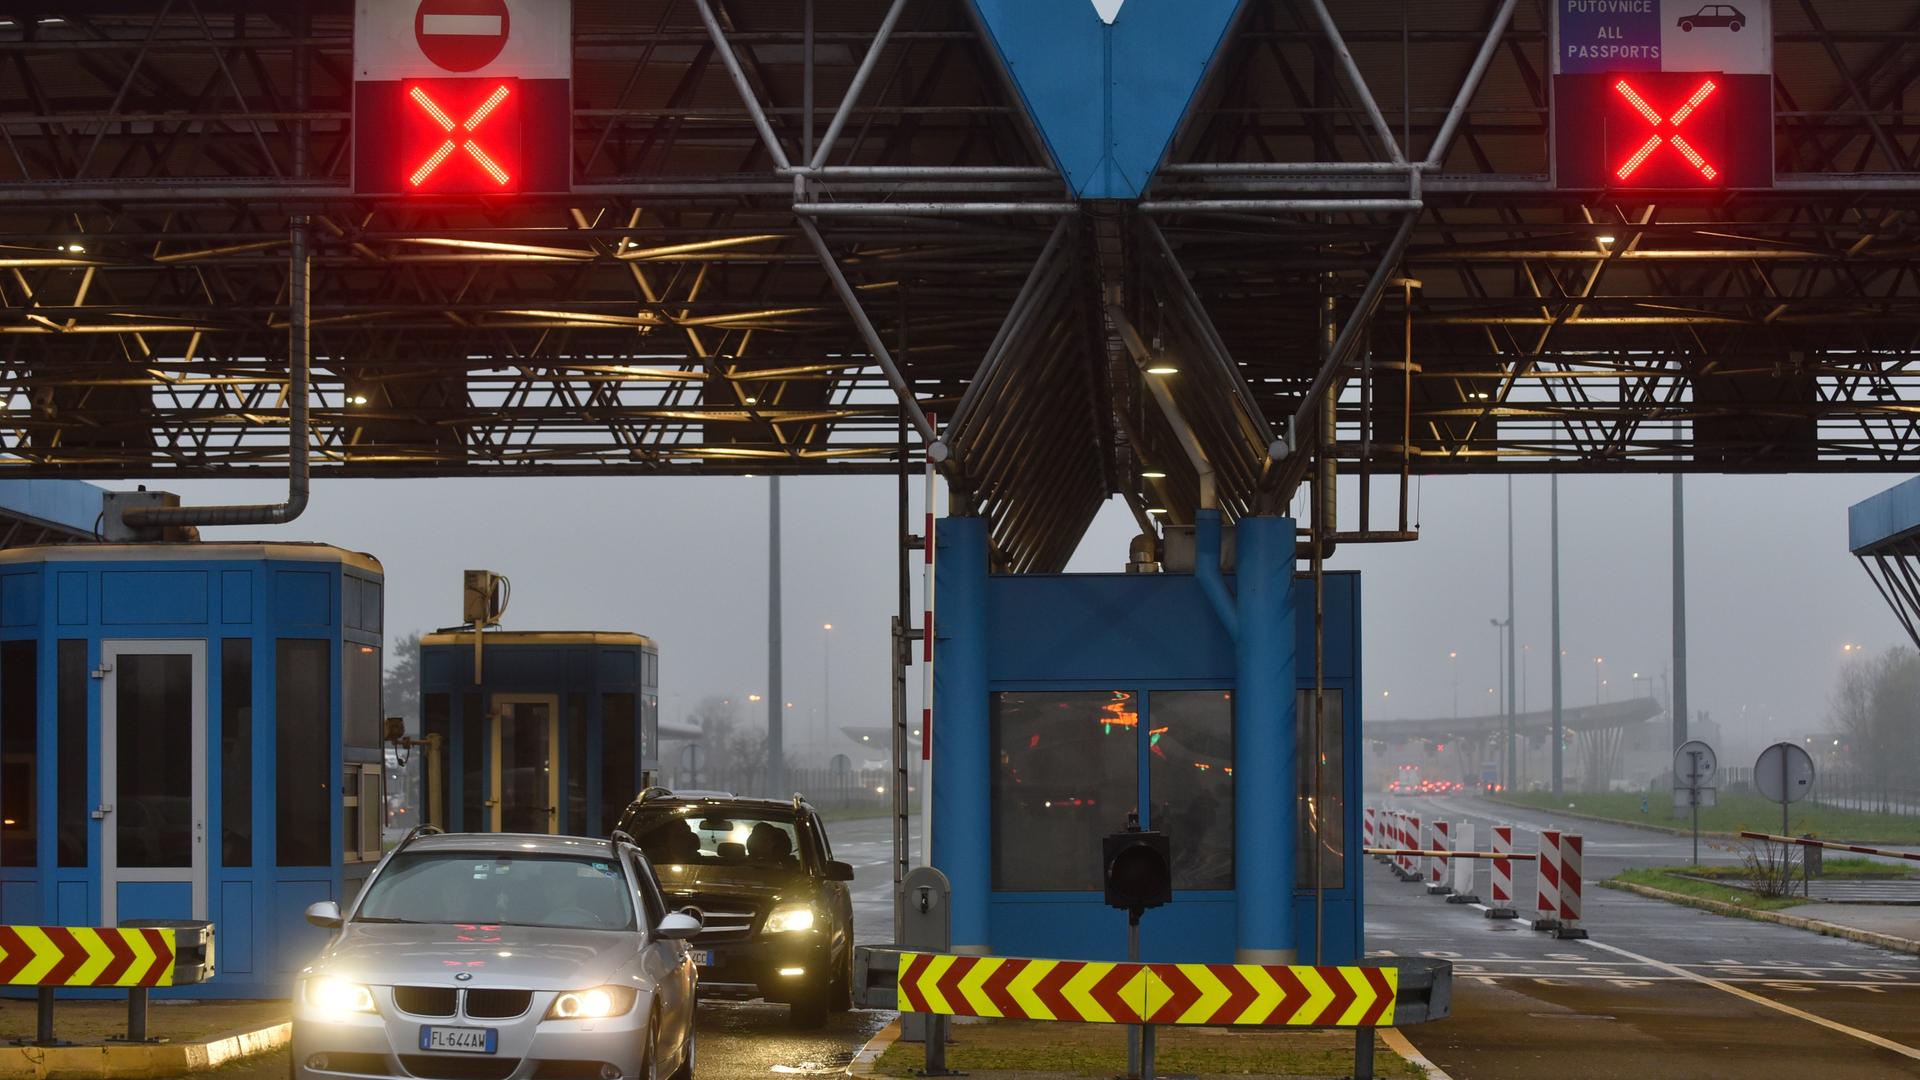 Passkontrollen entfallen ab 2023 - Kroatien darf Schengen-Raum beitreten - Veto gegen Bulgarien und Rumänien